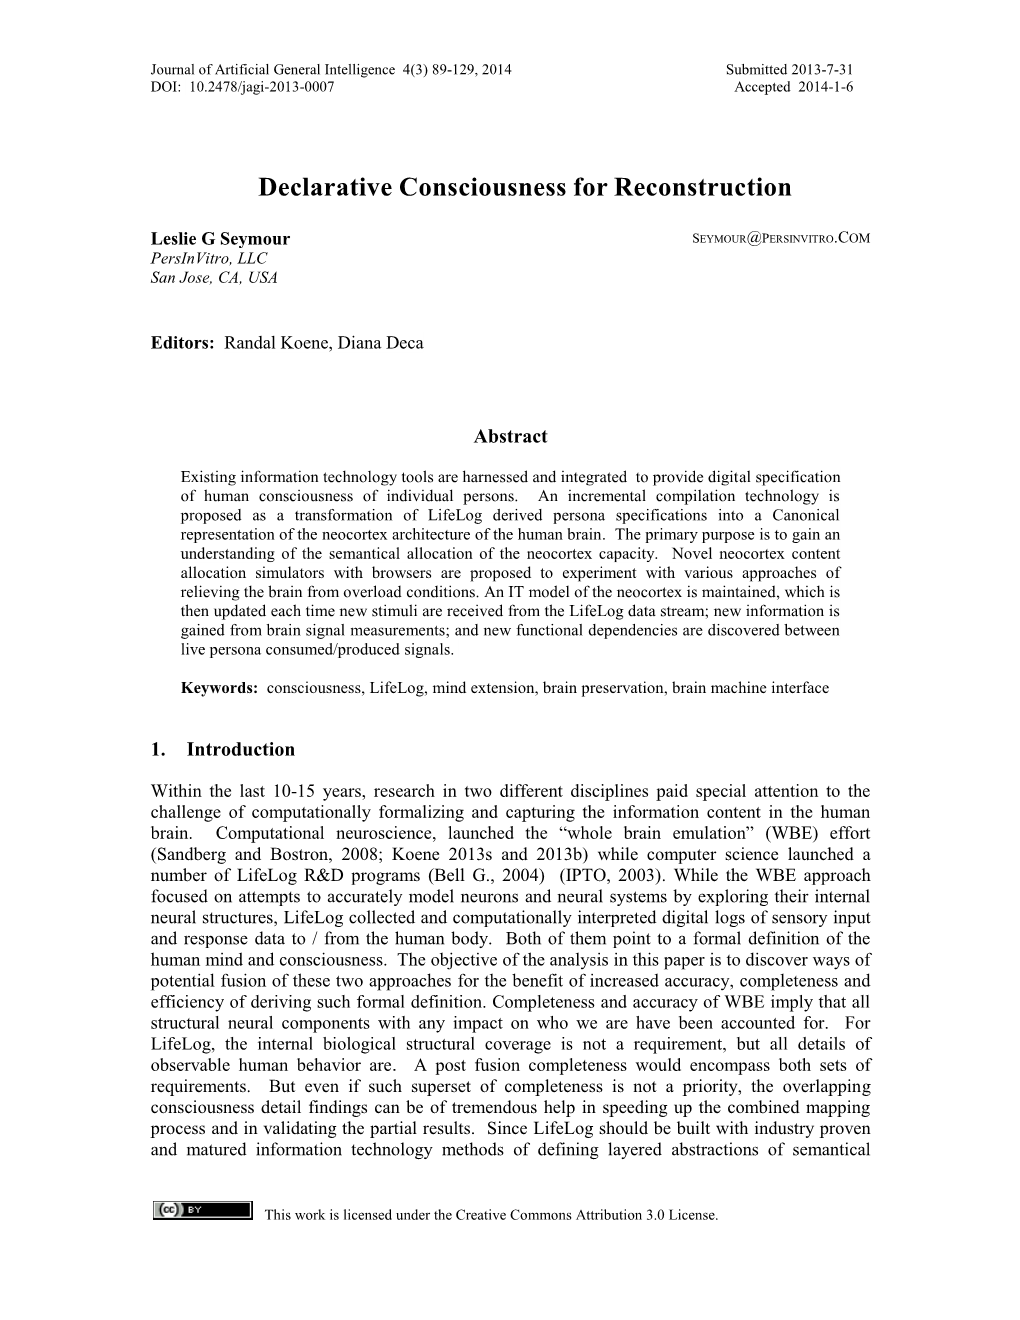 Declarative Consciousness for Reconstruction